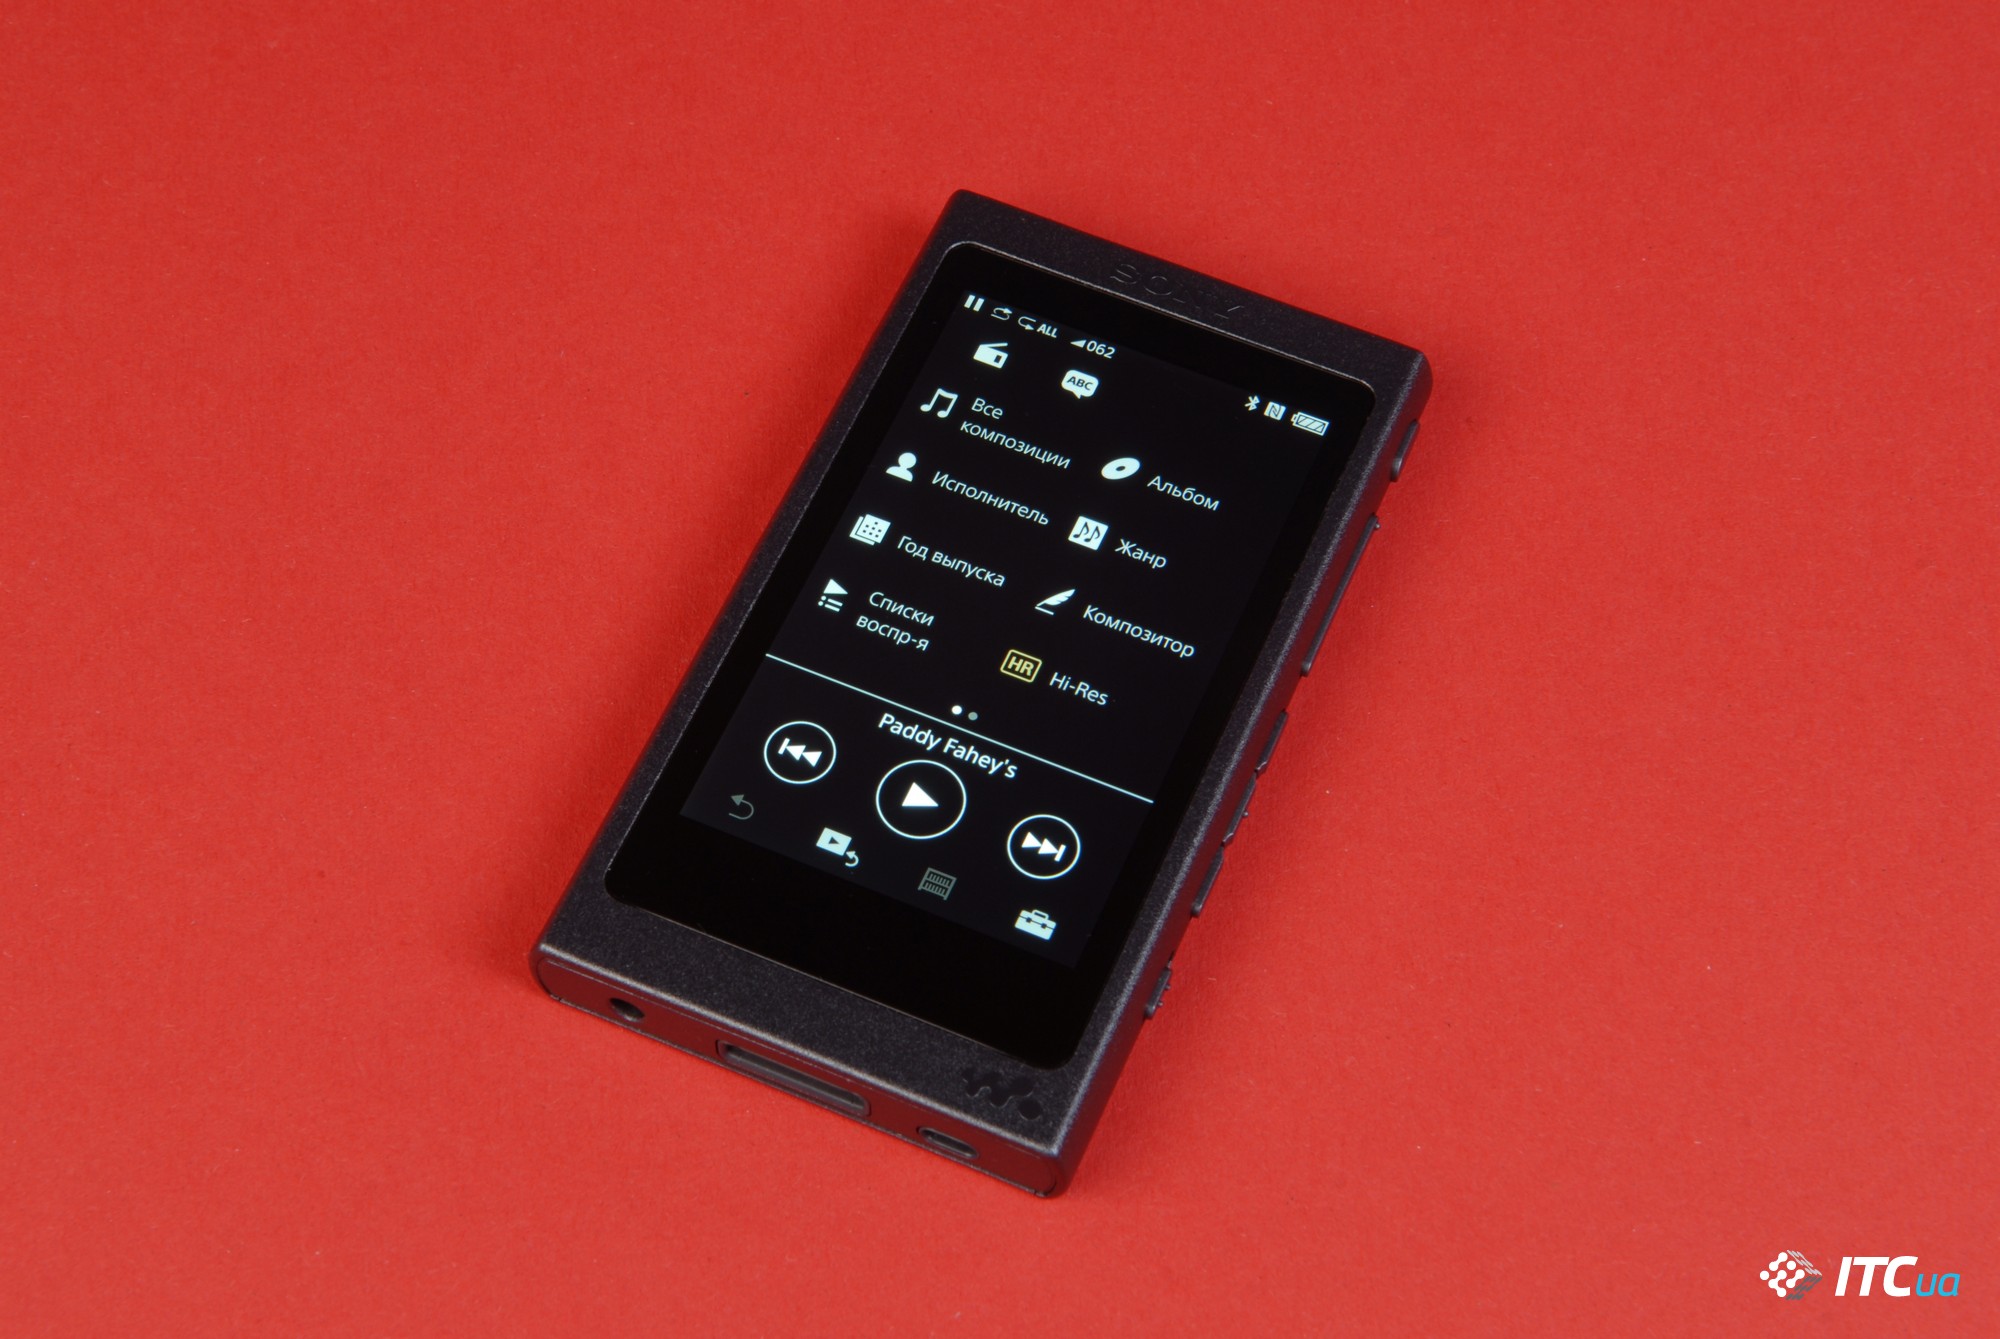 Экспресс-обзор Hi-Res плеера Sony Walkman NW-A35